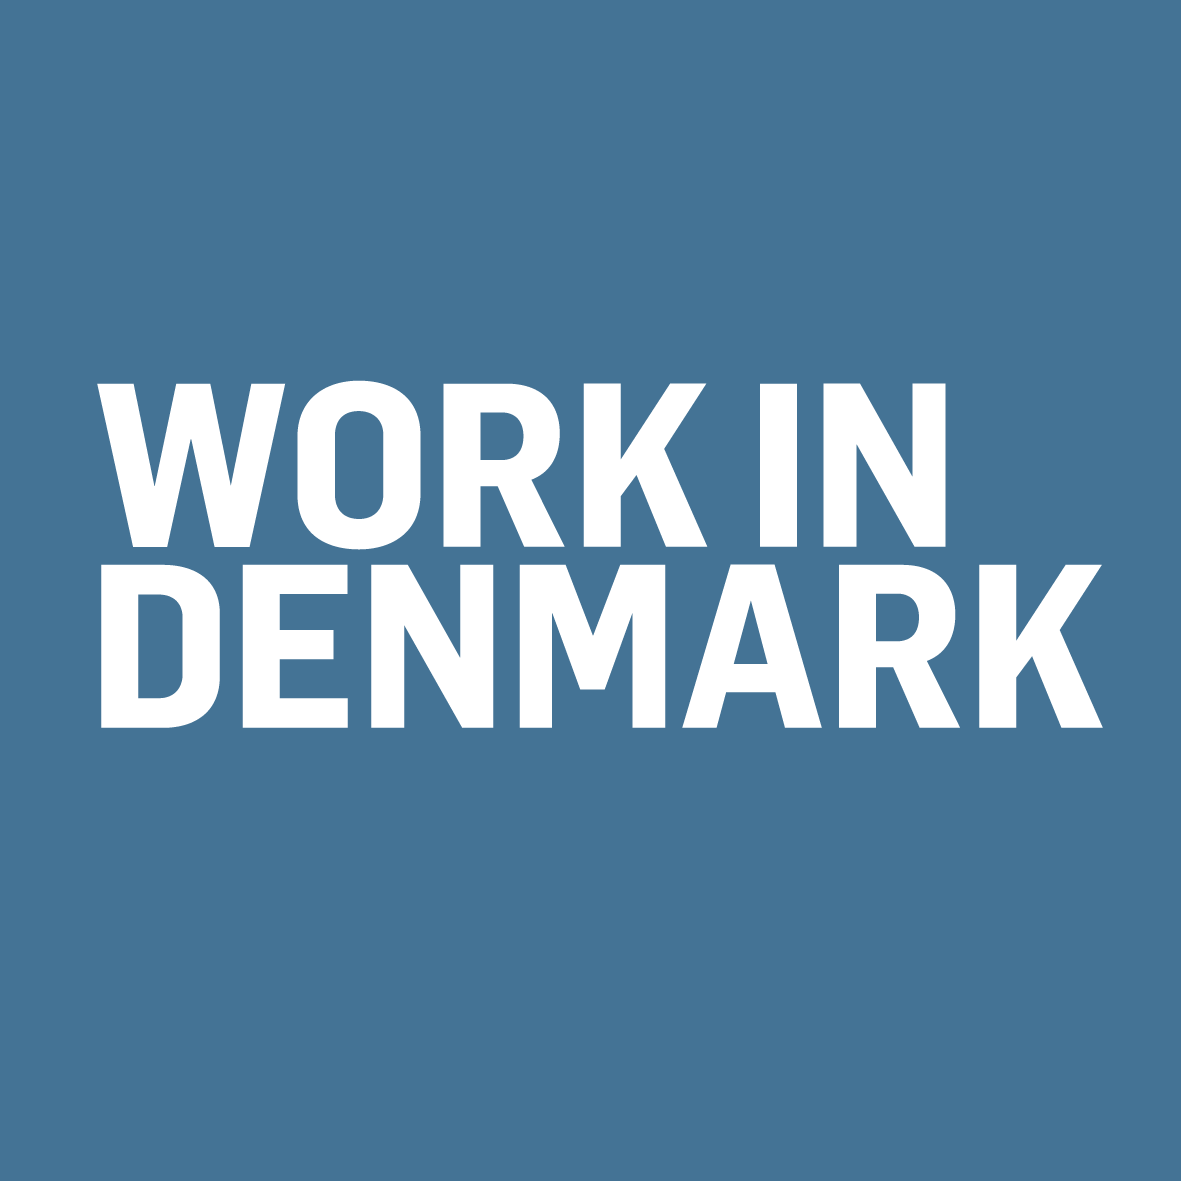 Work in Denmark logo